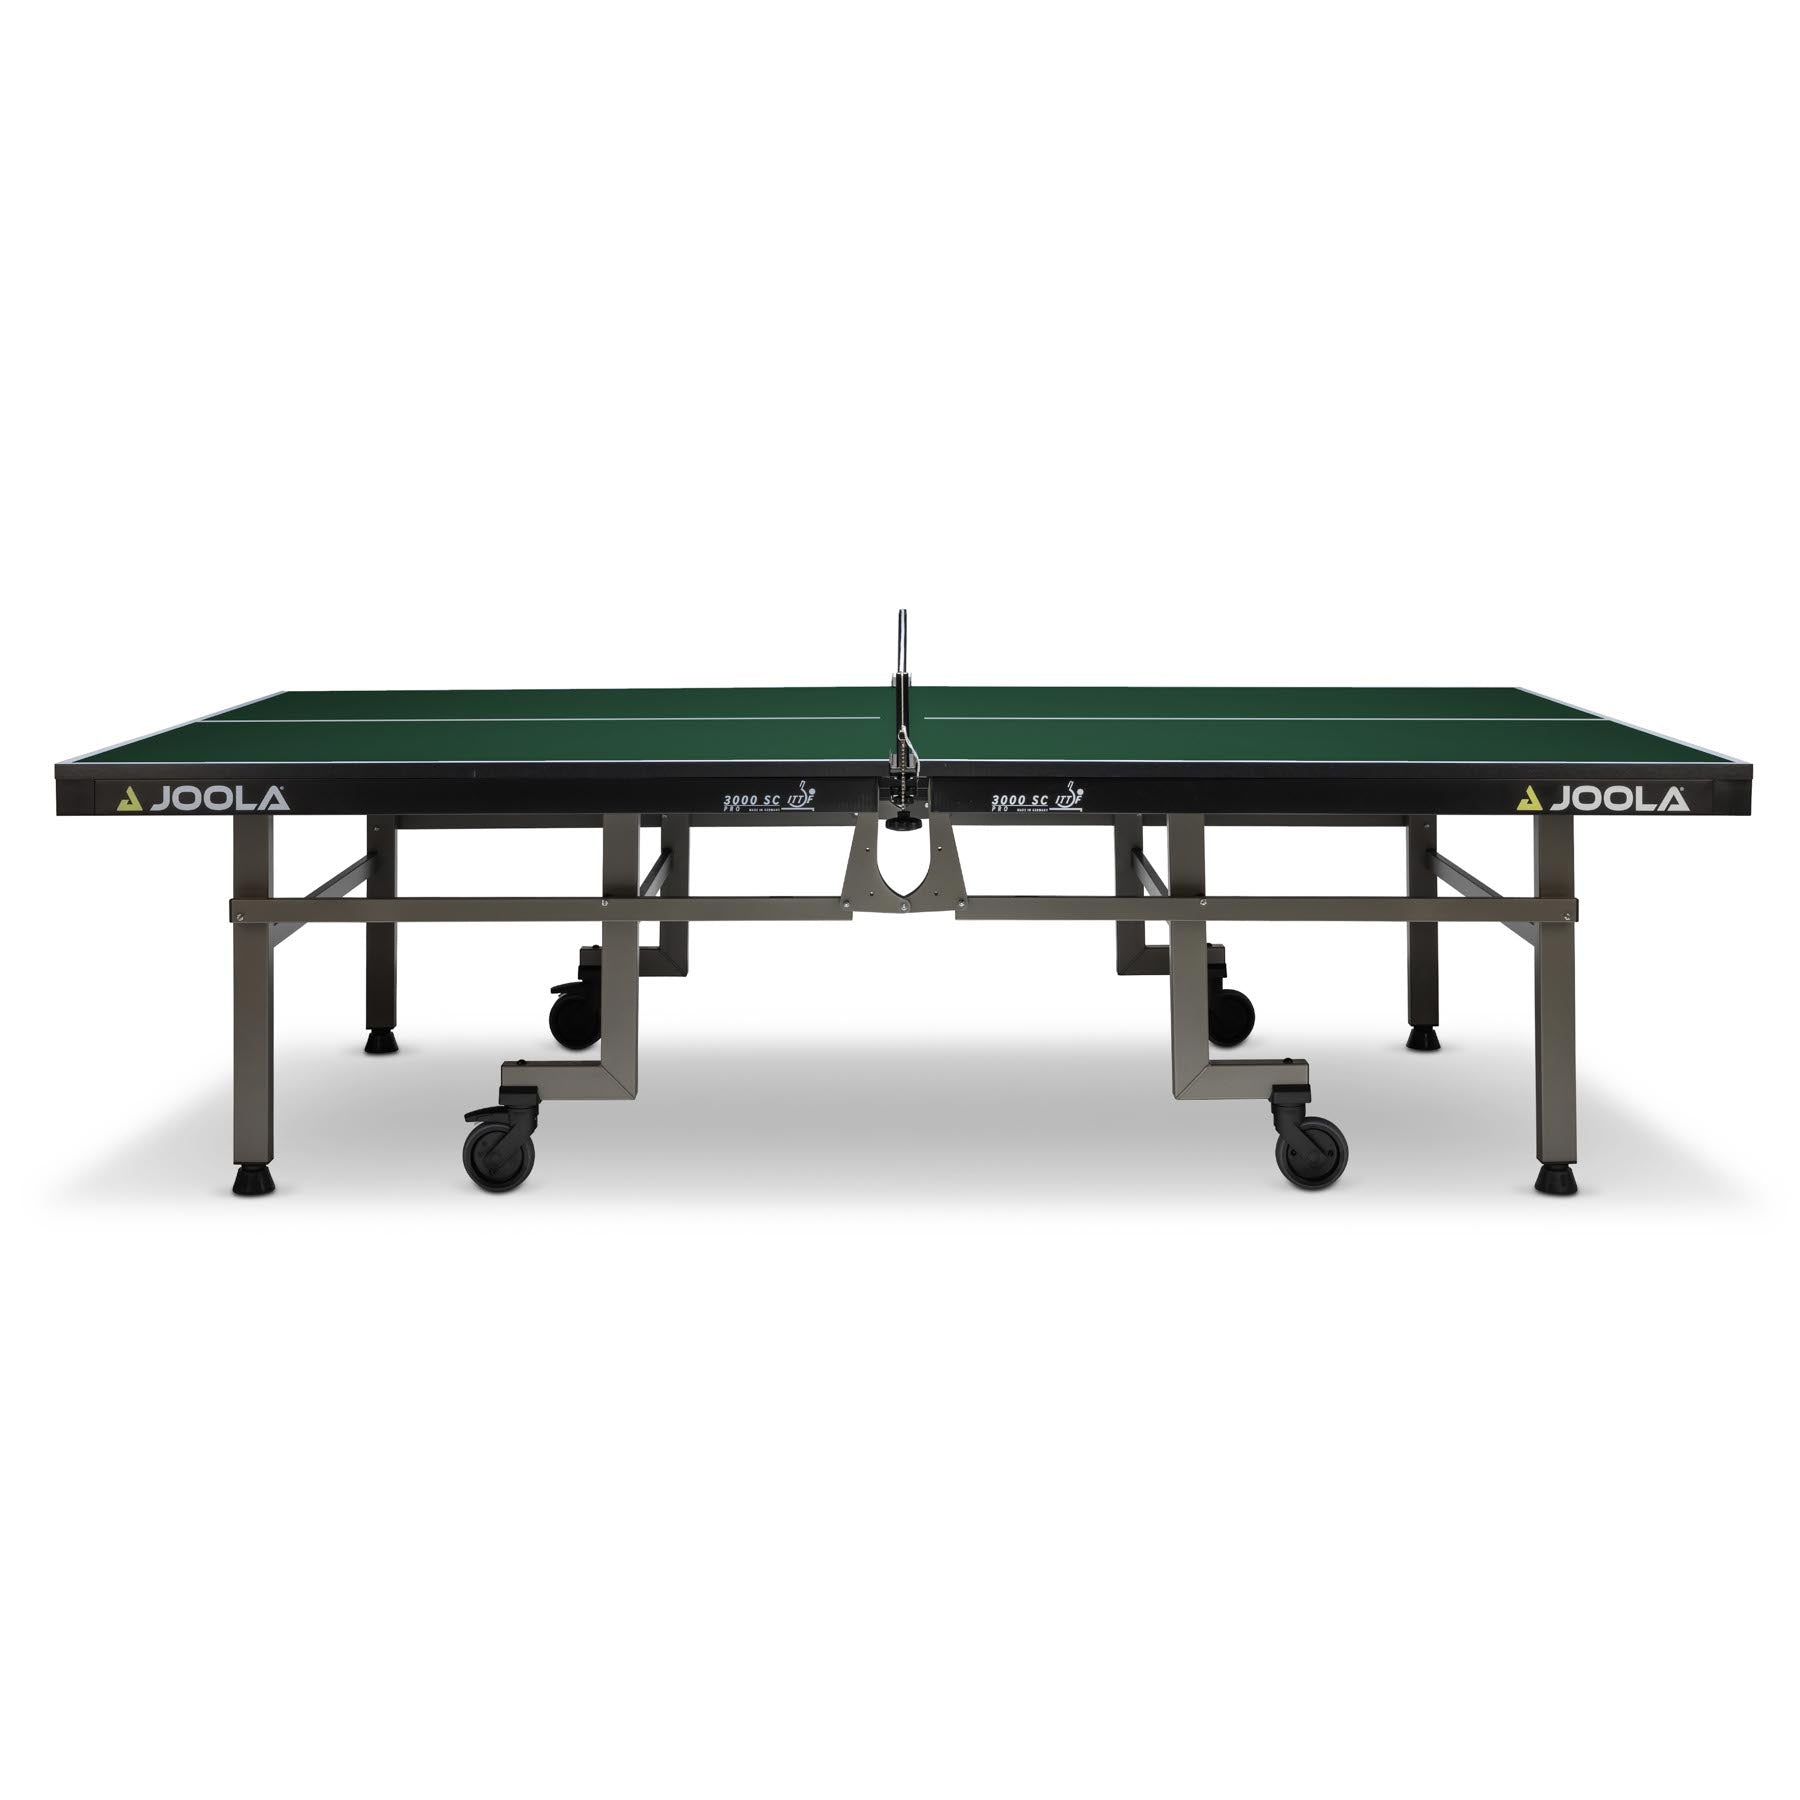 TT Store Tischtennis Joola - Tischtennisplatte 3000 SC Pro #Farbe_Grün